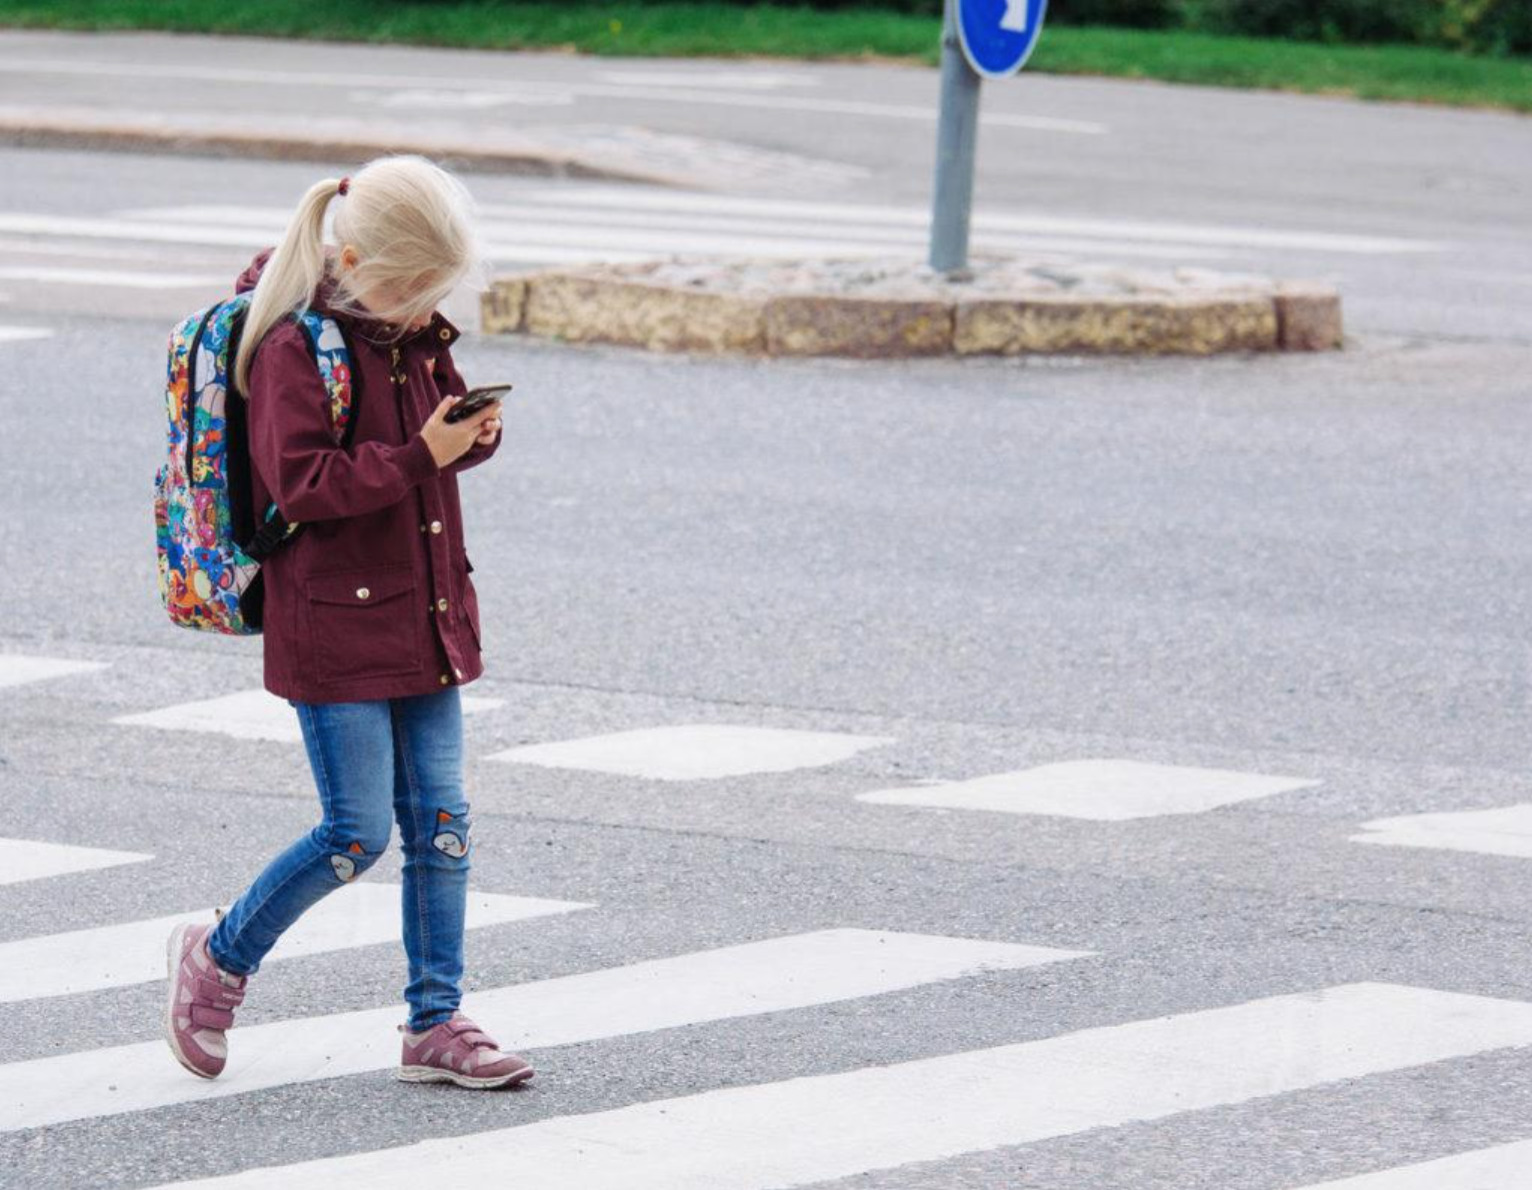 Turvallisesti koulutielle – osaahan lapsesi ylittää tien ohjeiden mukaisesti?